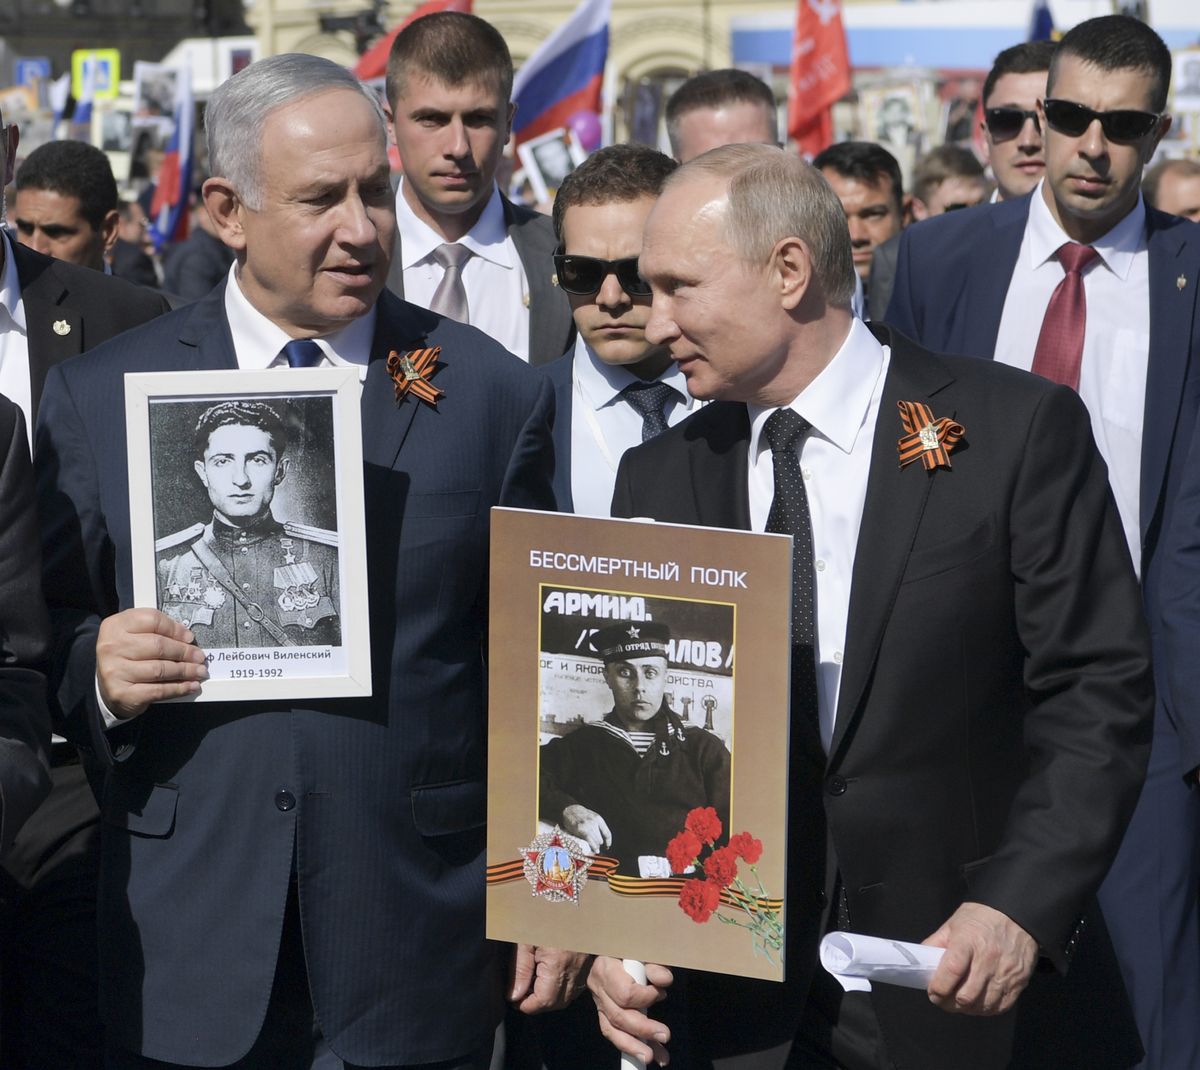 Беньямин Нетаньяху участвует в шествии "Бессмертного полка" вместе с Владимиром Путиным, Москва, 9 мая 2018 года.